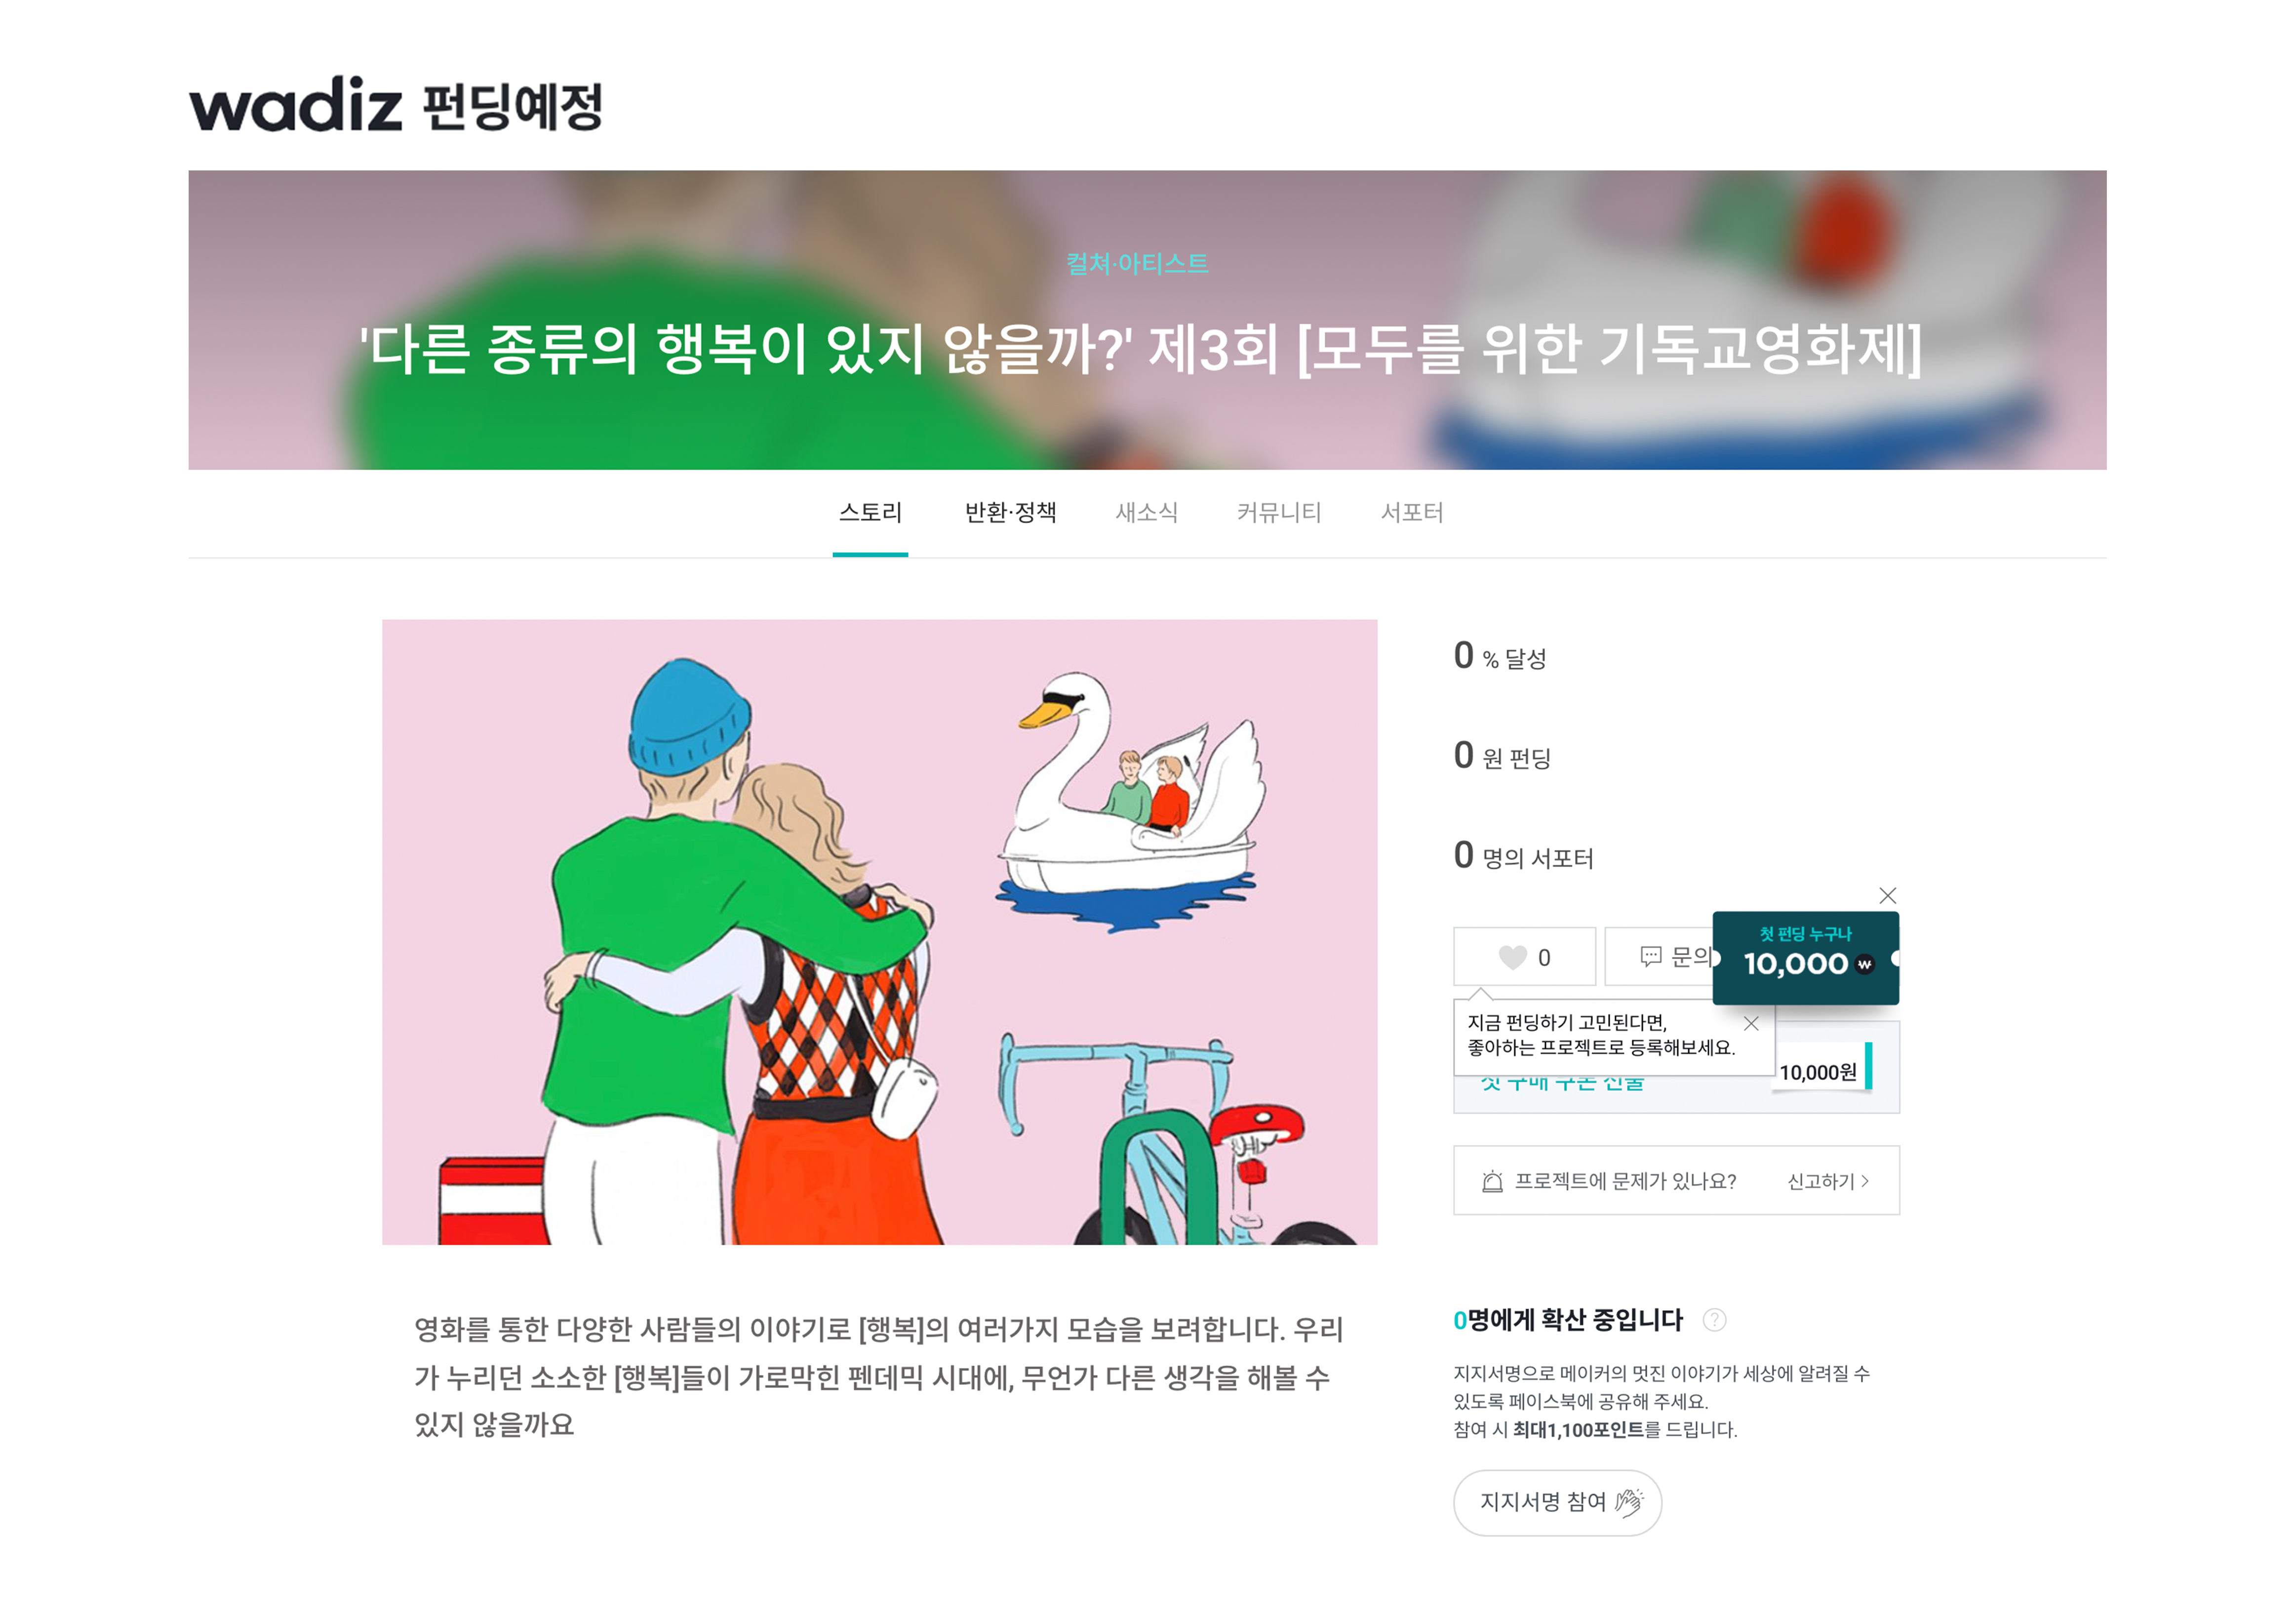 본펀딩오픈은 모기영 공식 SNS을 통해 확인해주세요!